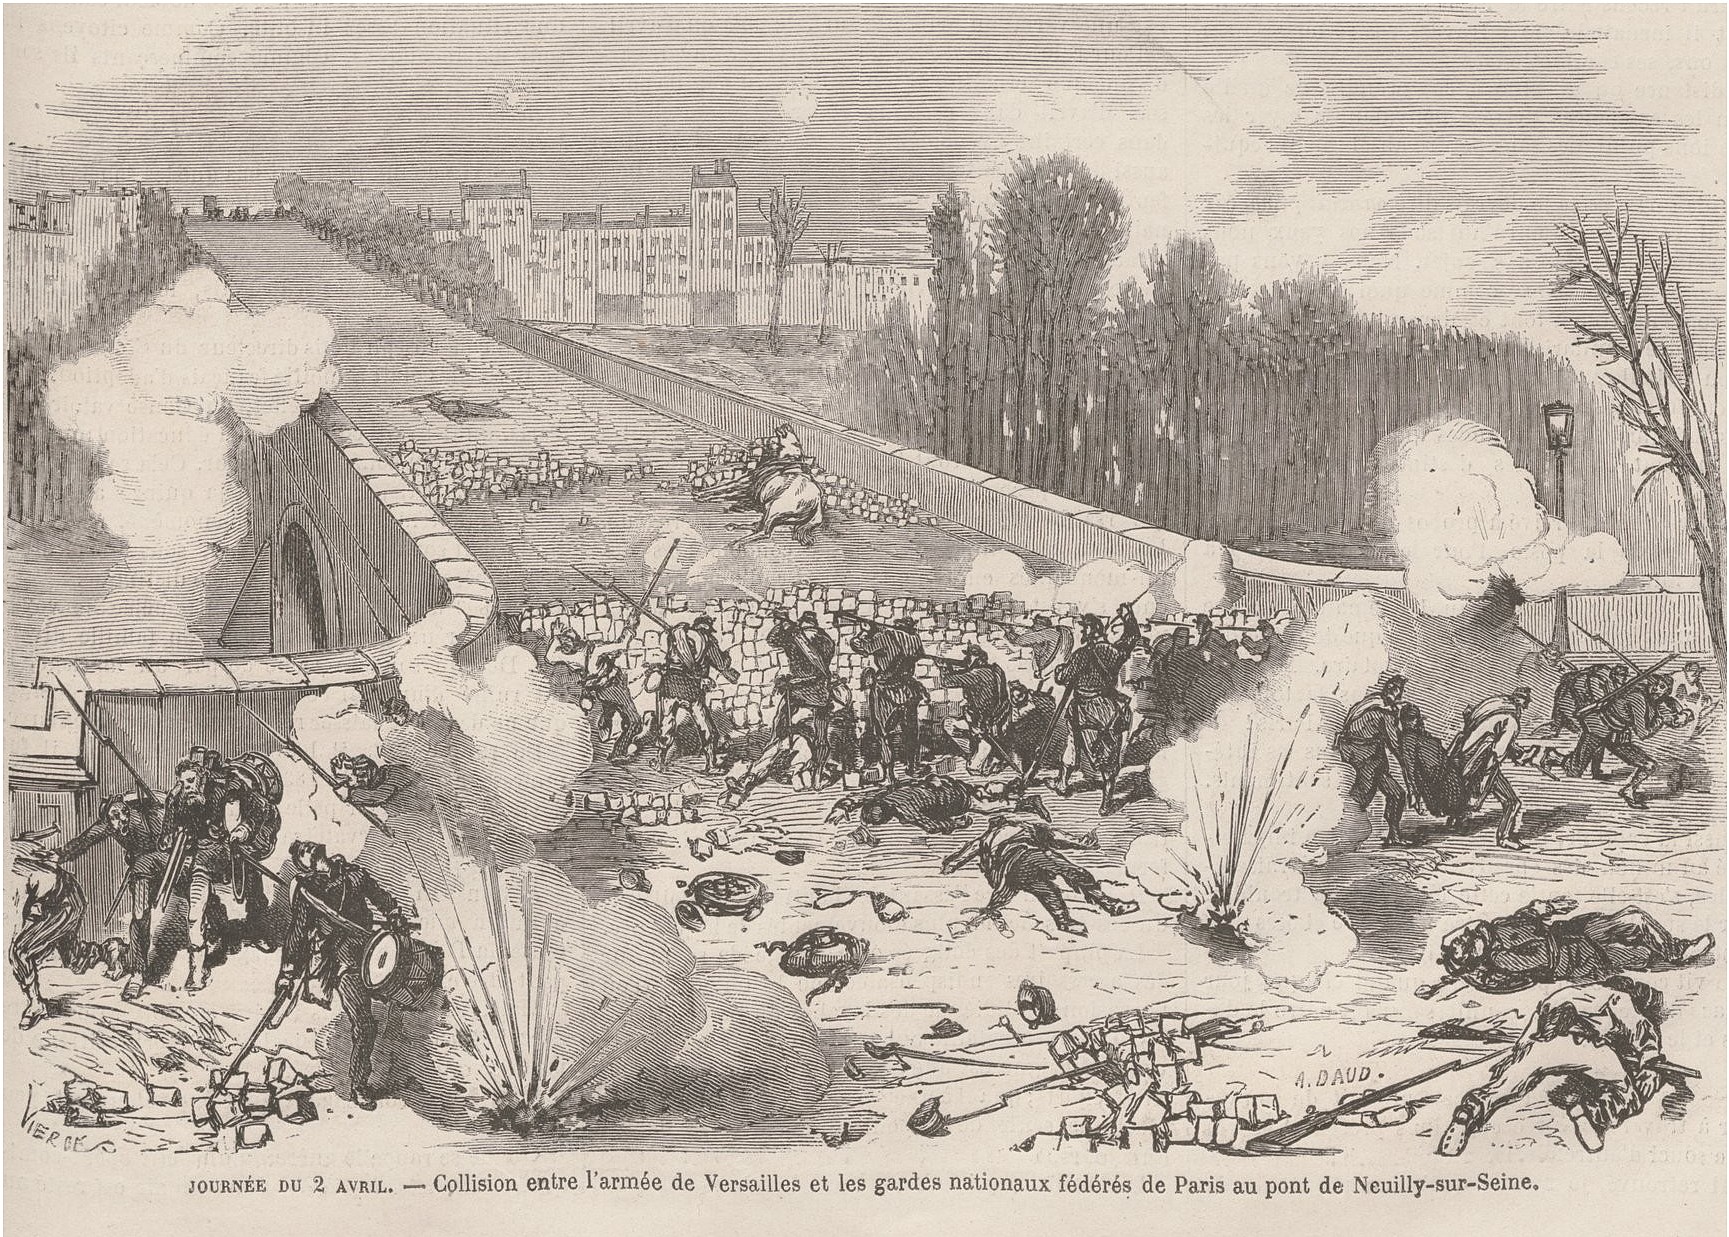 2 avril 1871 – Barricade du pont de Neuilly, l’attaque des versaillais. – Dessin de Vierge (source : Le Monde Illustré du 8 avril 1871)